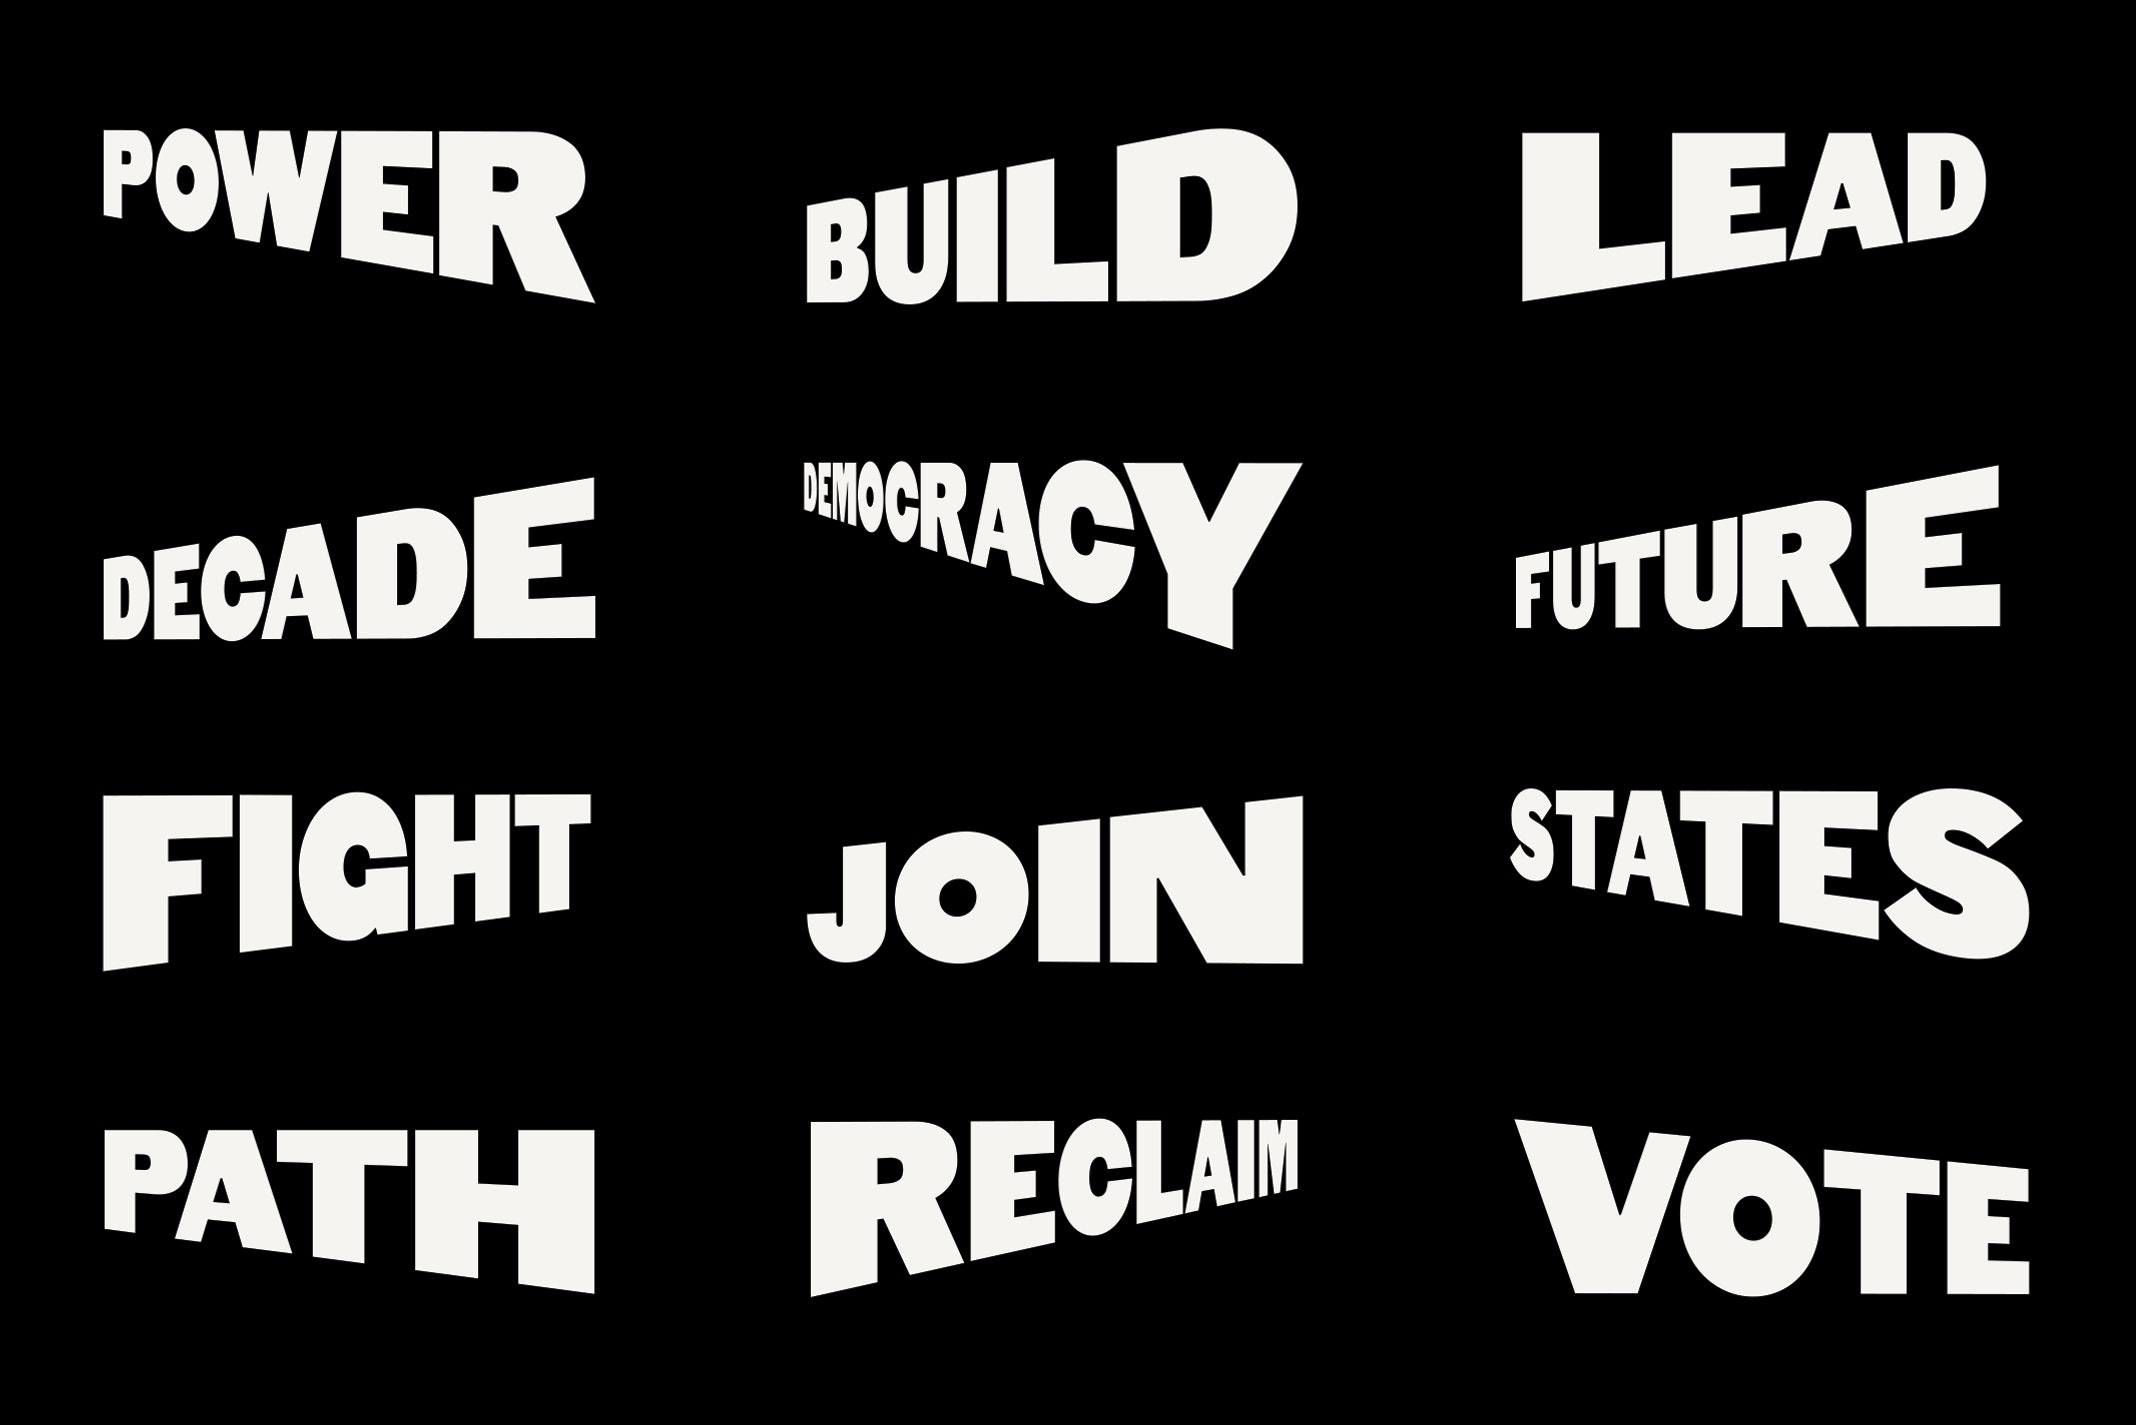 Identitas visual untuk komite aksi politik Forward Majority dirancang oleh studio Order yang berbasis di New York